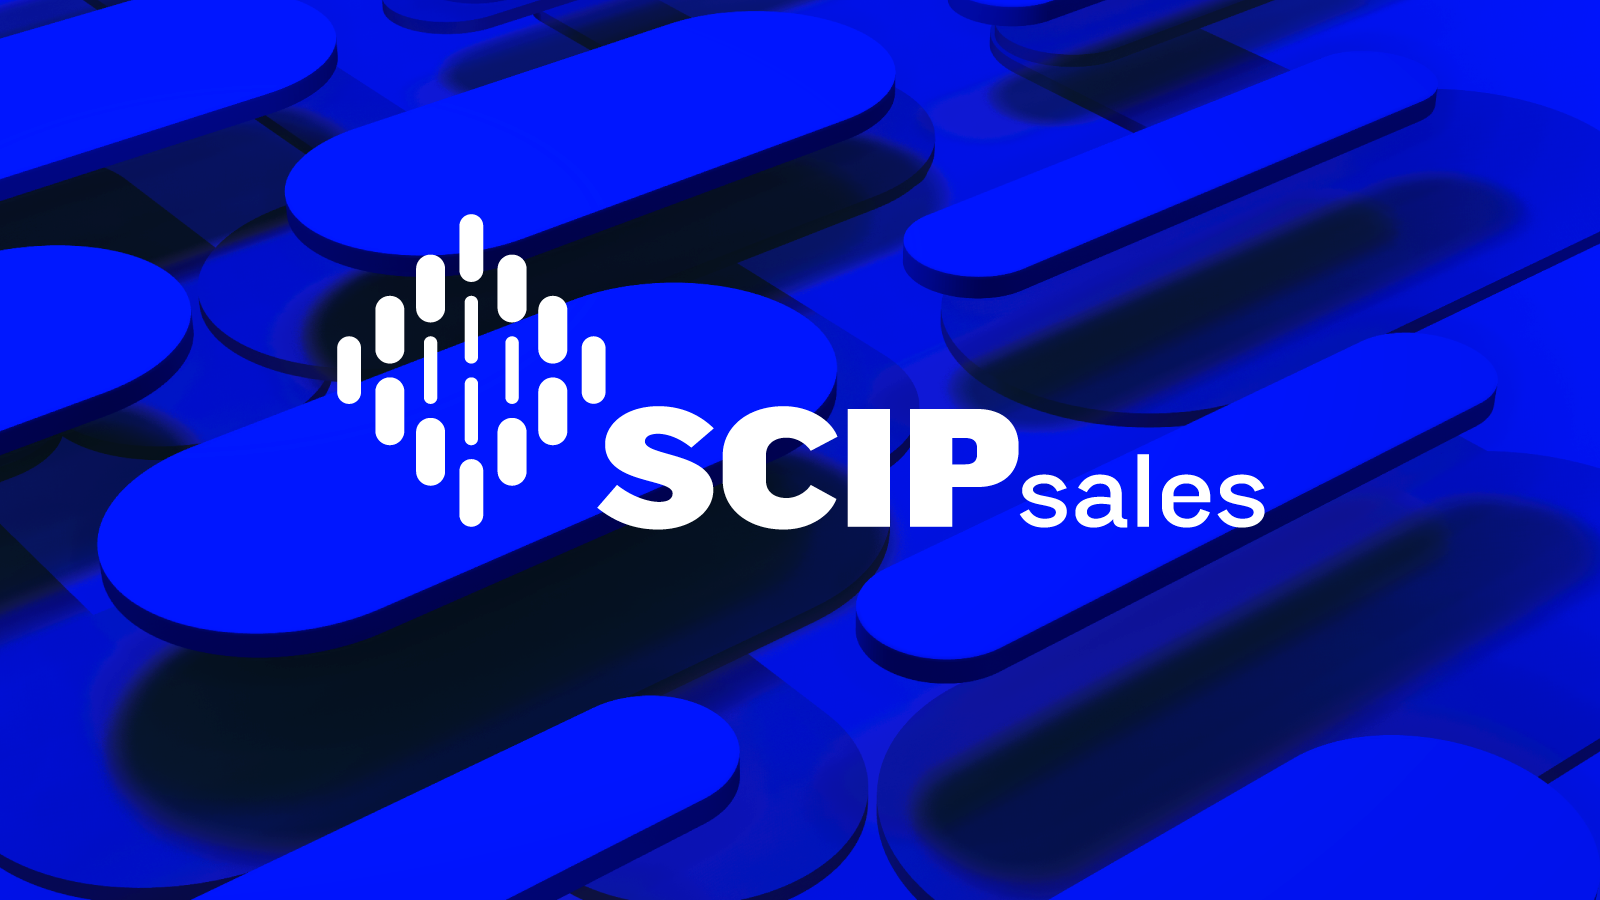 SCIP Sales